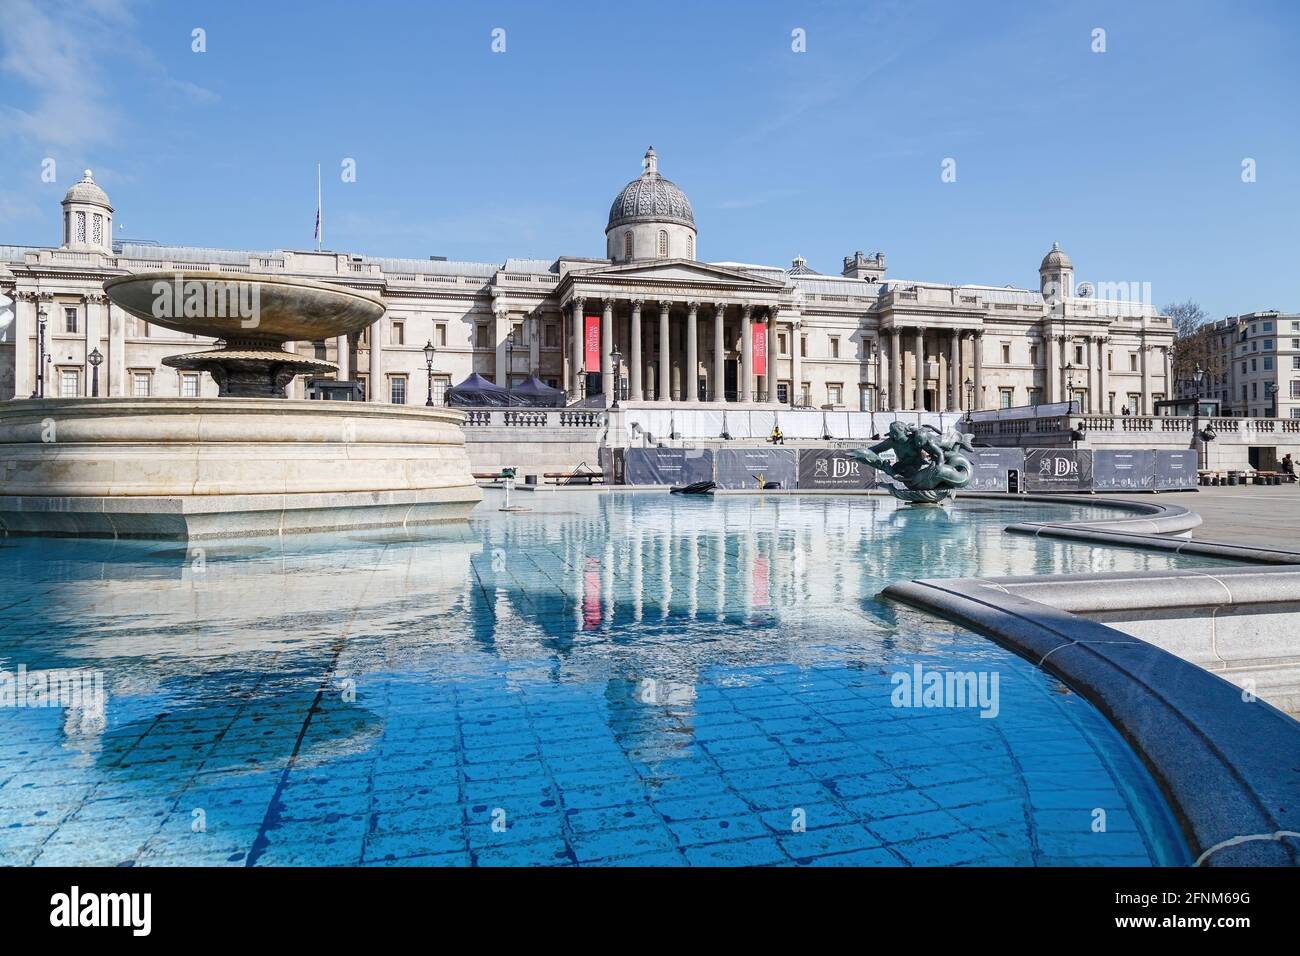 La Galleria Nazionale si riflette nelle acque blu ancora di una delle fontane di Piazza Trafalgar, che riempie l'immagine in primo piano. Foto Stock